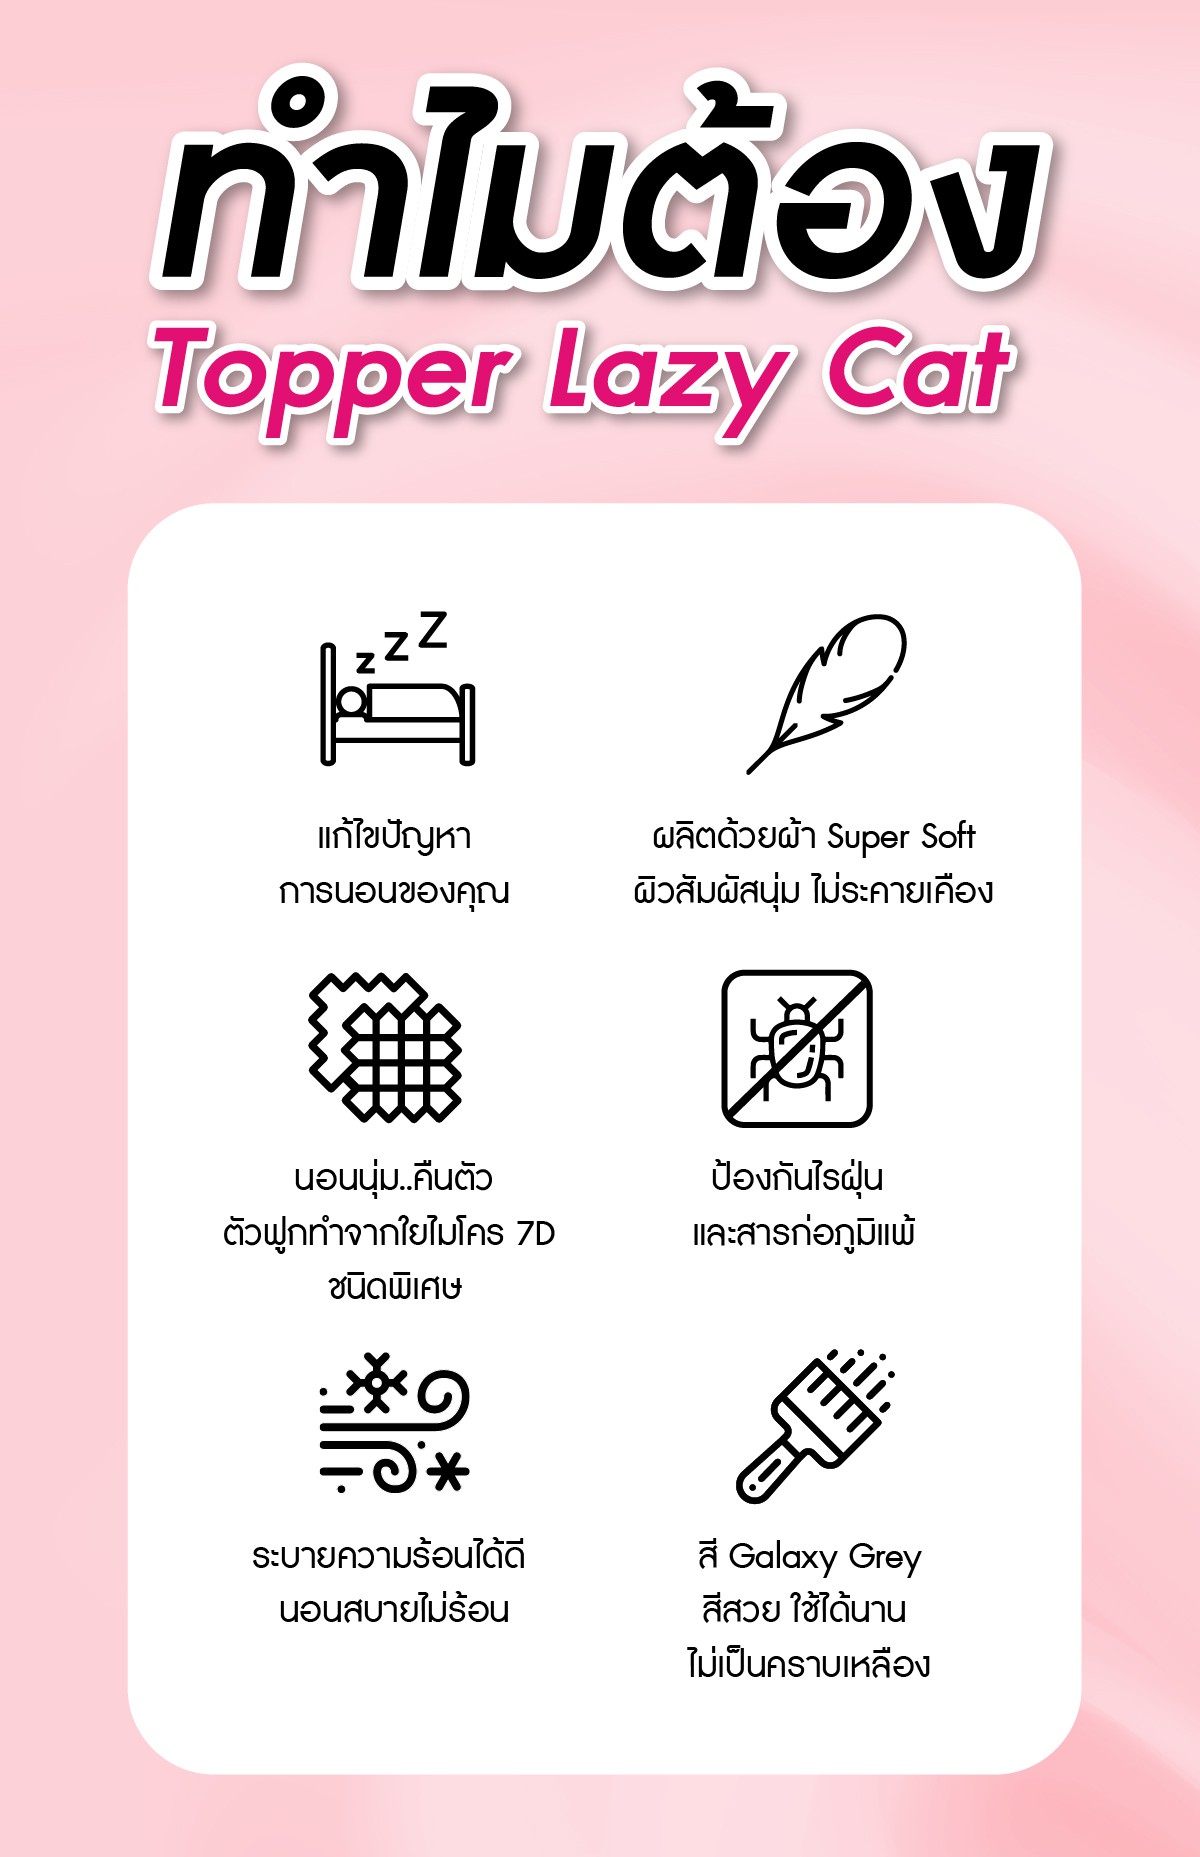 topper-topper ที่นอน-ท็อปเปอร์-ที่นอน ท็อปเปอร์-ฟูกที่นอน-ที่นอน-ที่นอนปิคนิค-นอนปวดหลัง-LazyCat-เตียงนอน-อาการปวดหลังนอนไม่หลับ-ที่นอนเป่าลม